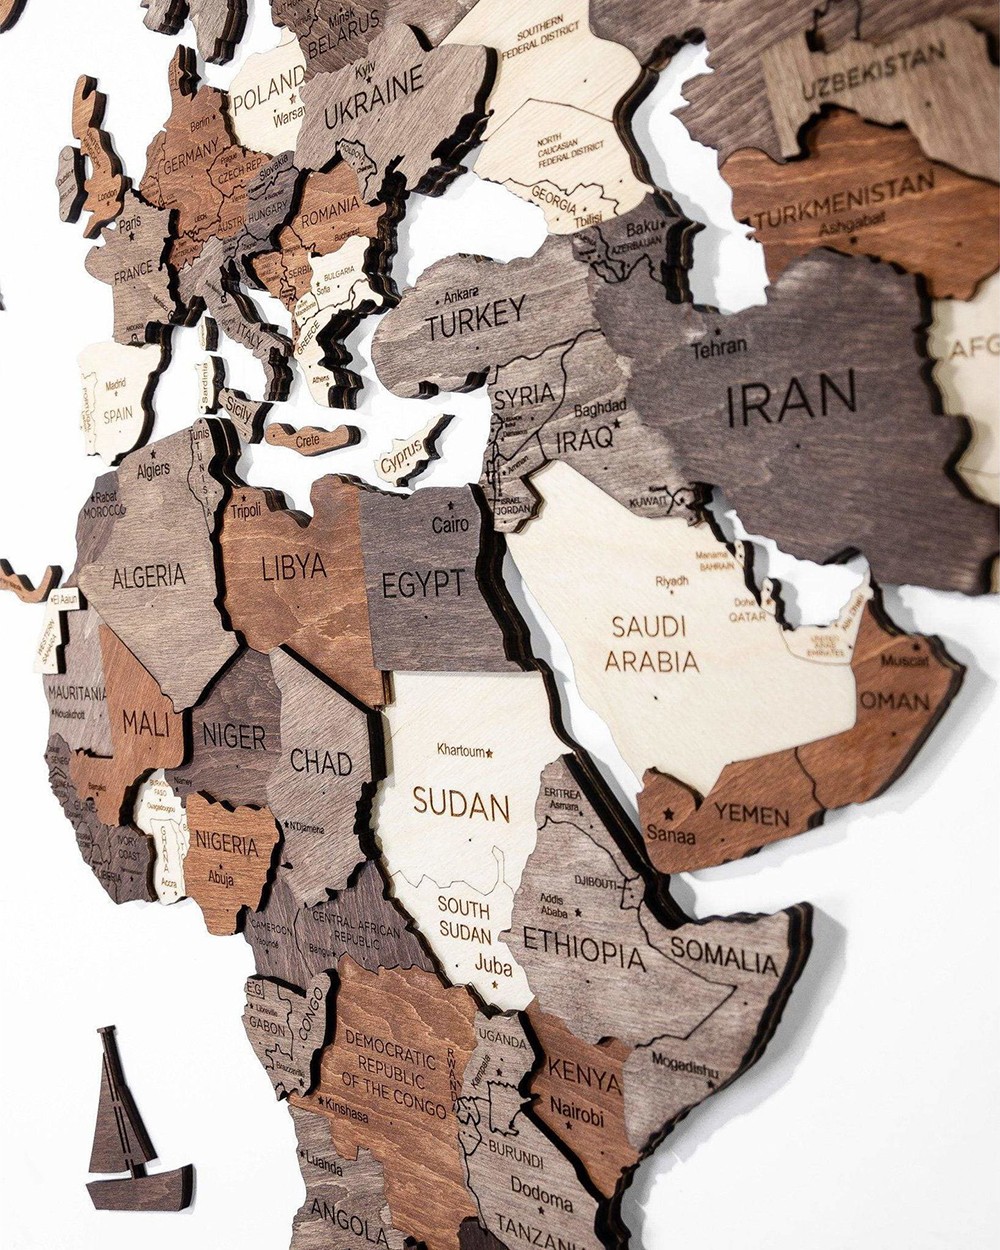 خرائط حائط ثلاثية الأبعاد لقارات العالم